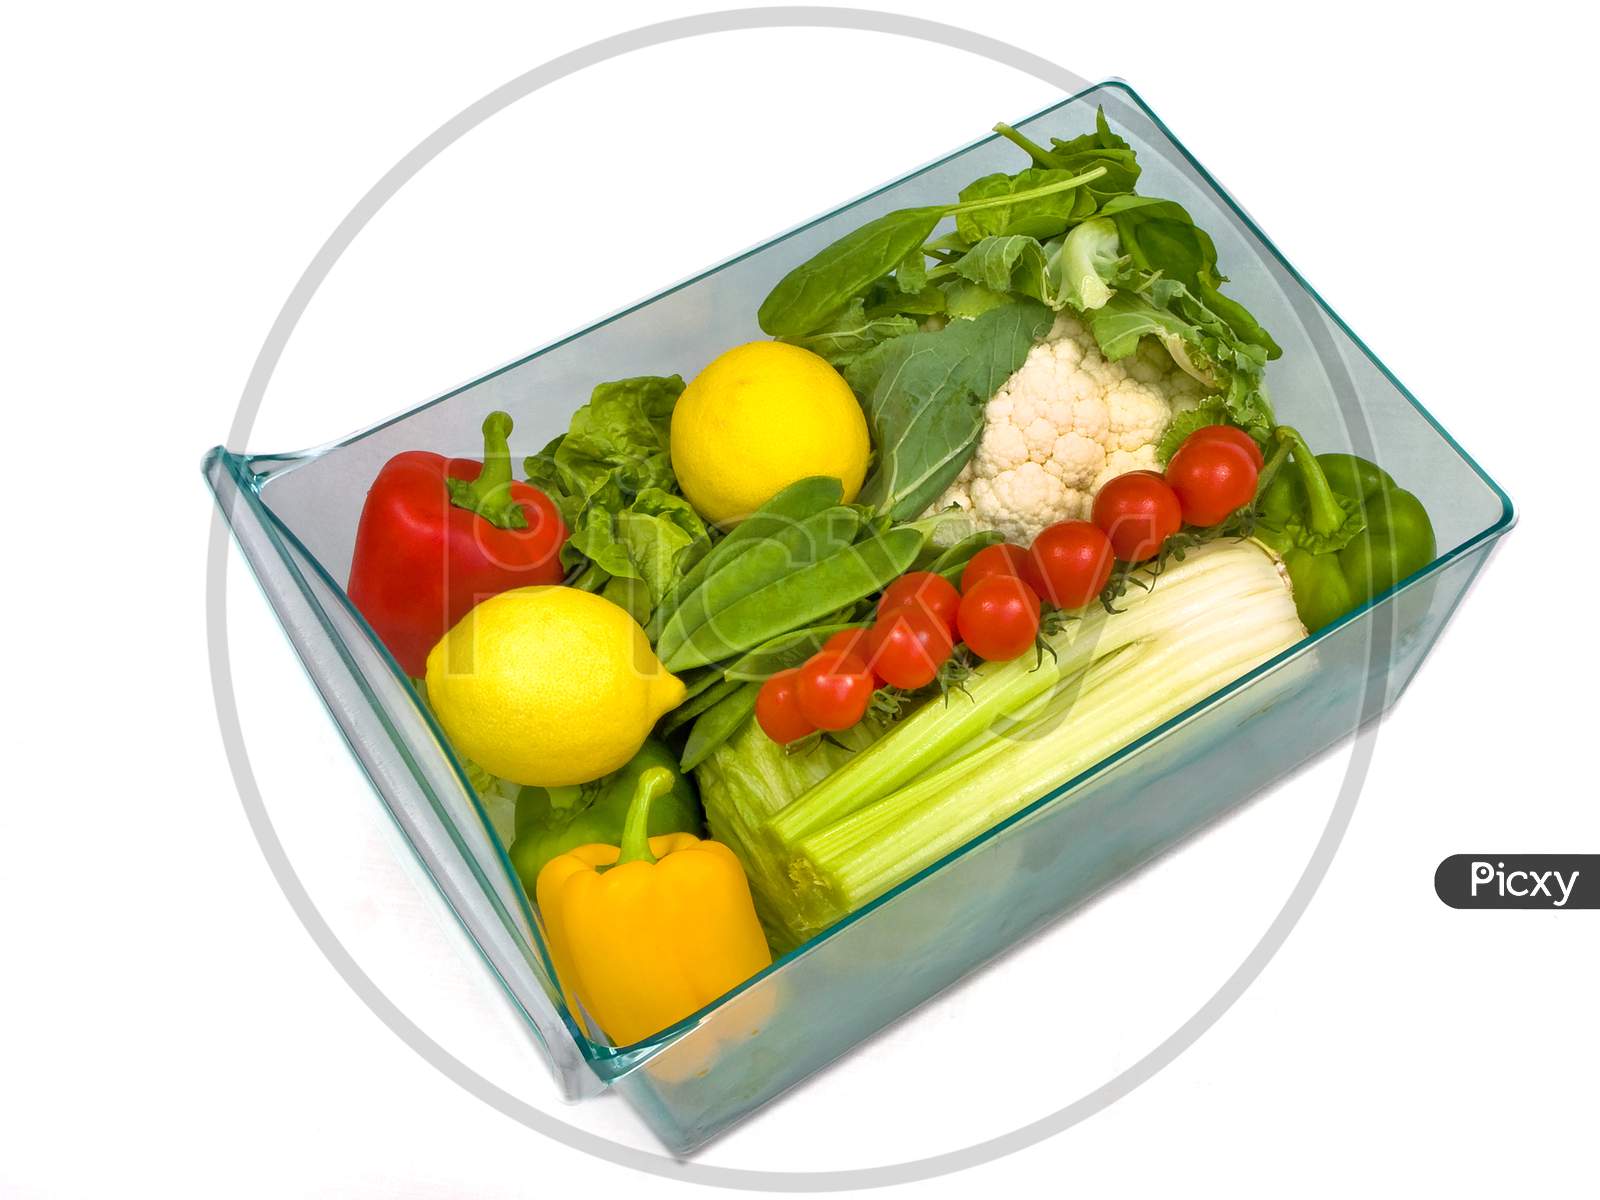 Refrigerator salad drawer full of salad and vegetables